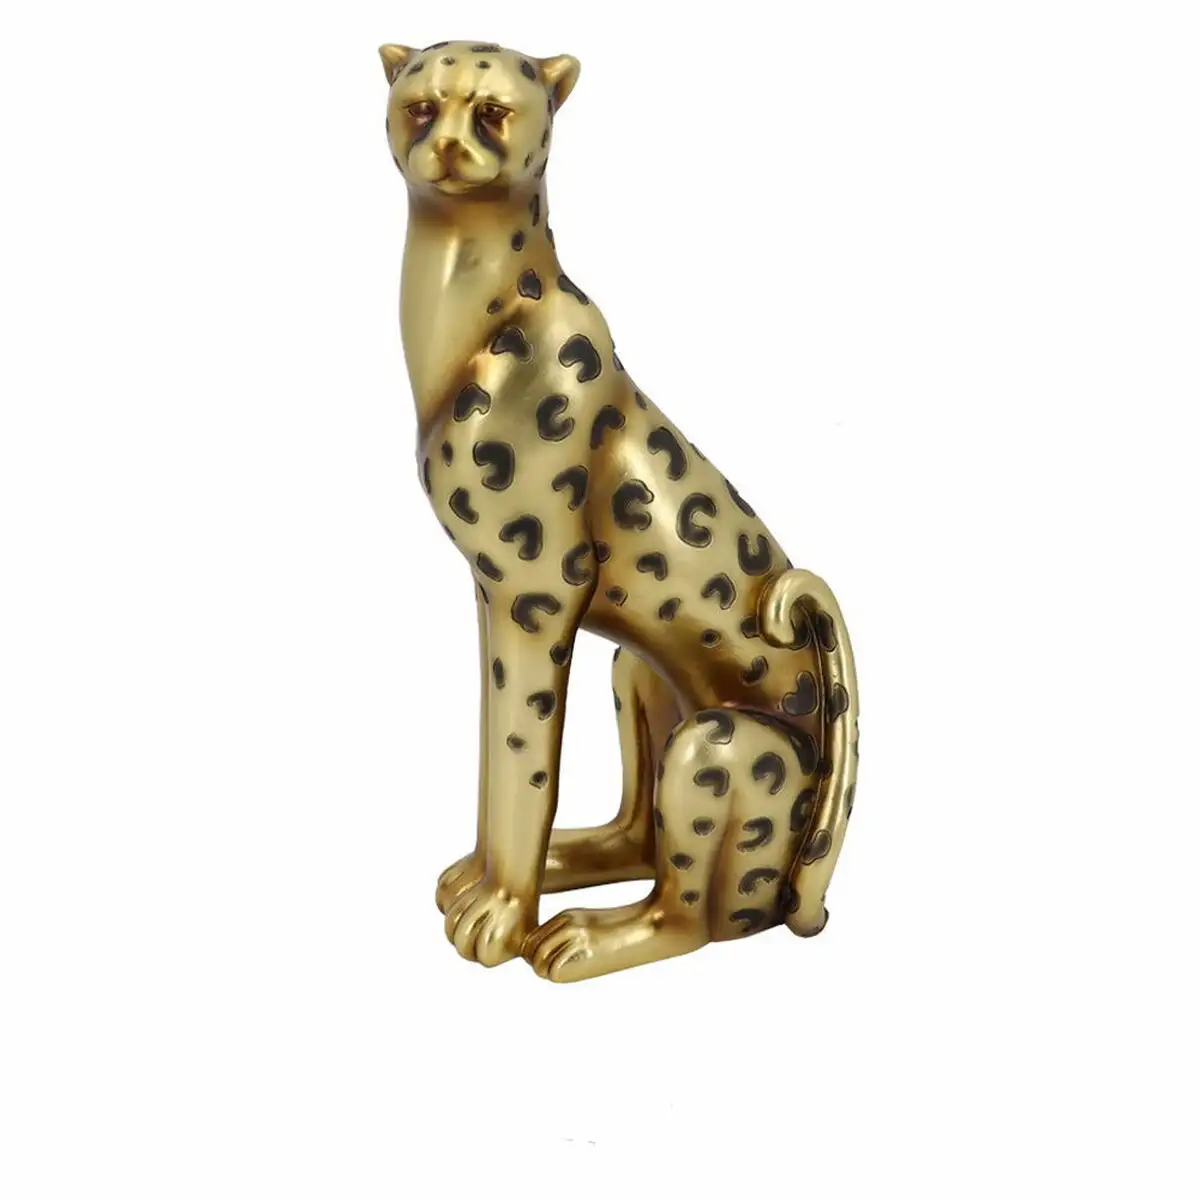 Figurine decorative dkd home decor 23 5 x 16 x 43 cm dore leopard colonial_4779. DIAYTAR SENEGAL - Votre Destination pour un Shopping Réfléchi. Découvrez notre gamme variée et choisissez des produits qui correspondent à vos valeurs et à votre style de vie.